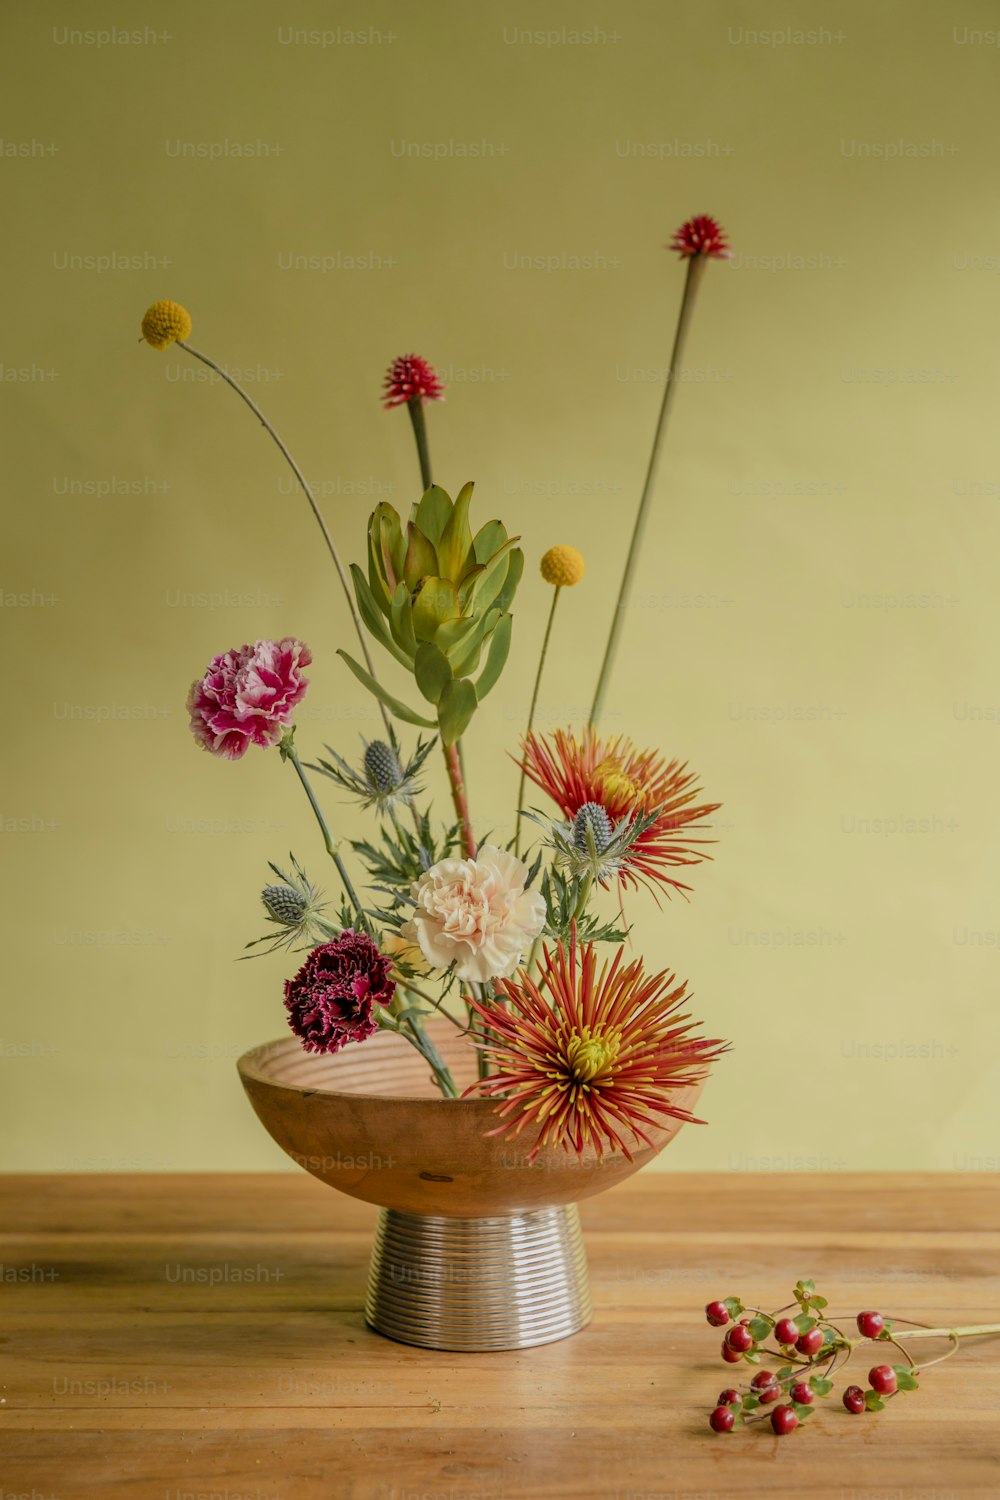 Un cuenco de madera lleno de flores encima de una mesa de madera